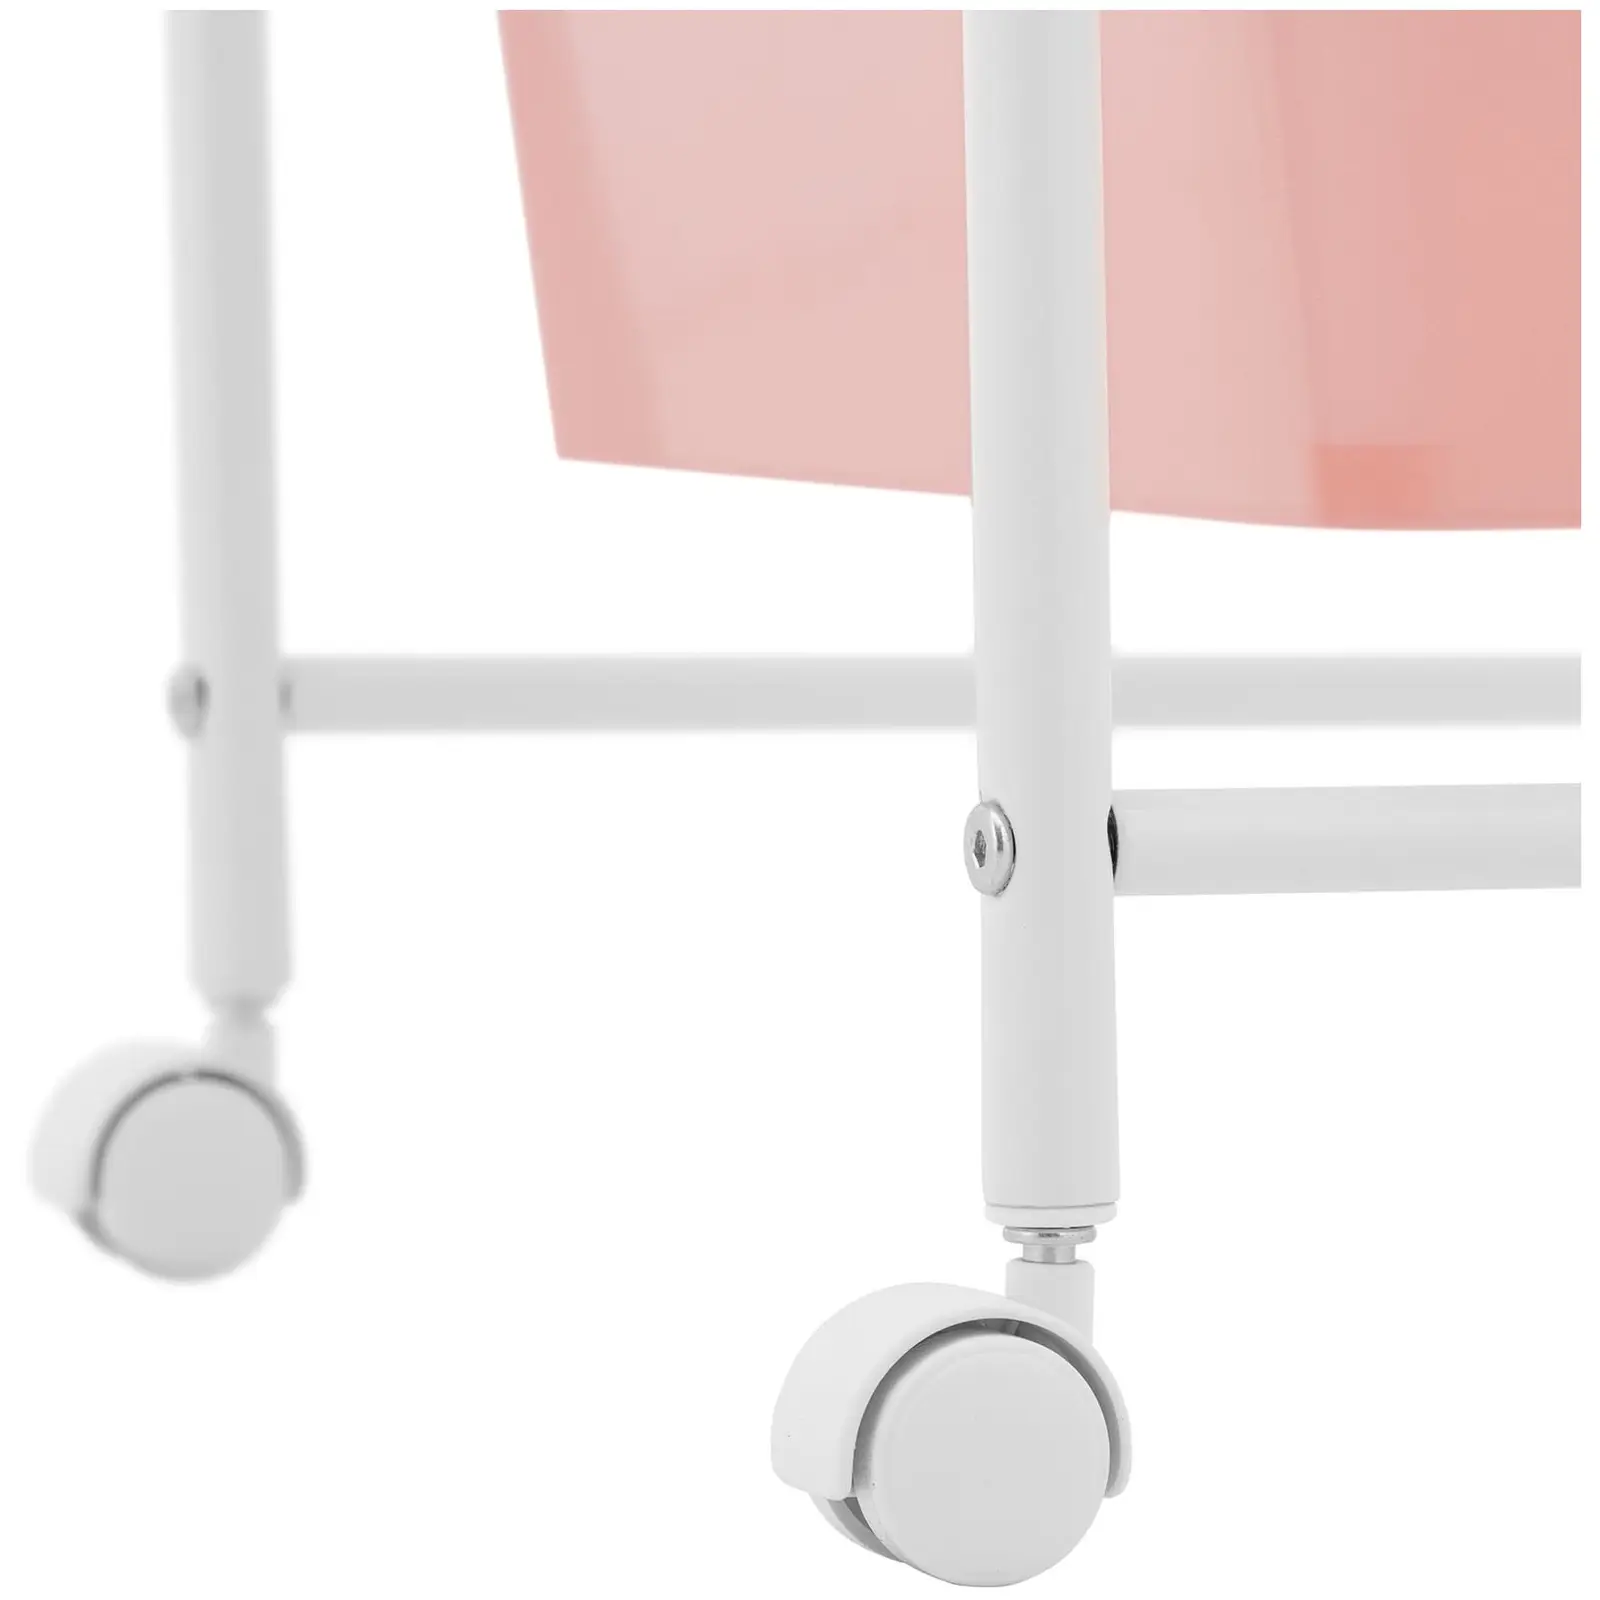 Korivaunu - kylpylä - 4 laatikkoa - vaaleanpunainen/valkoinen